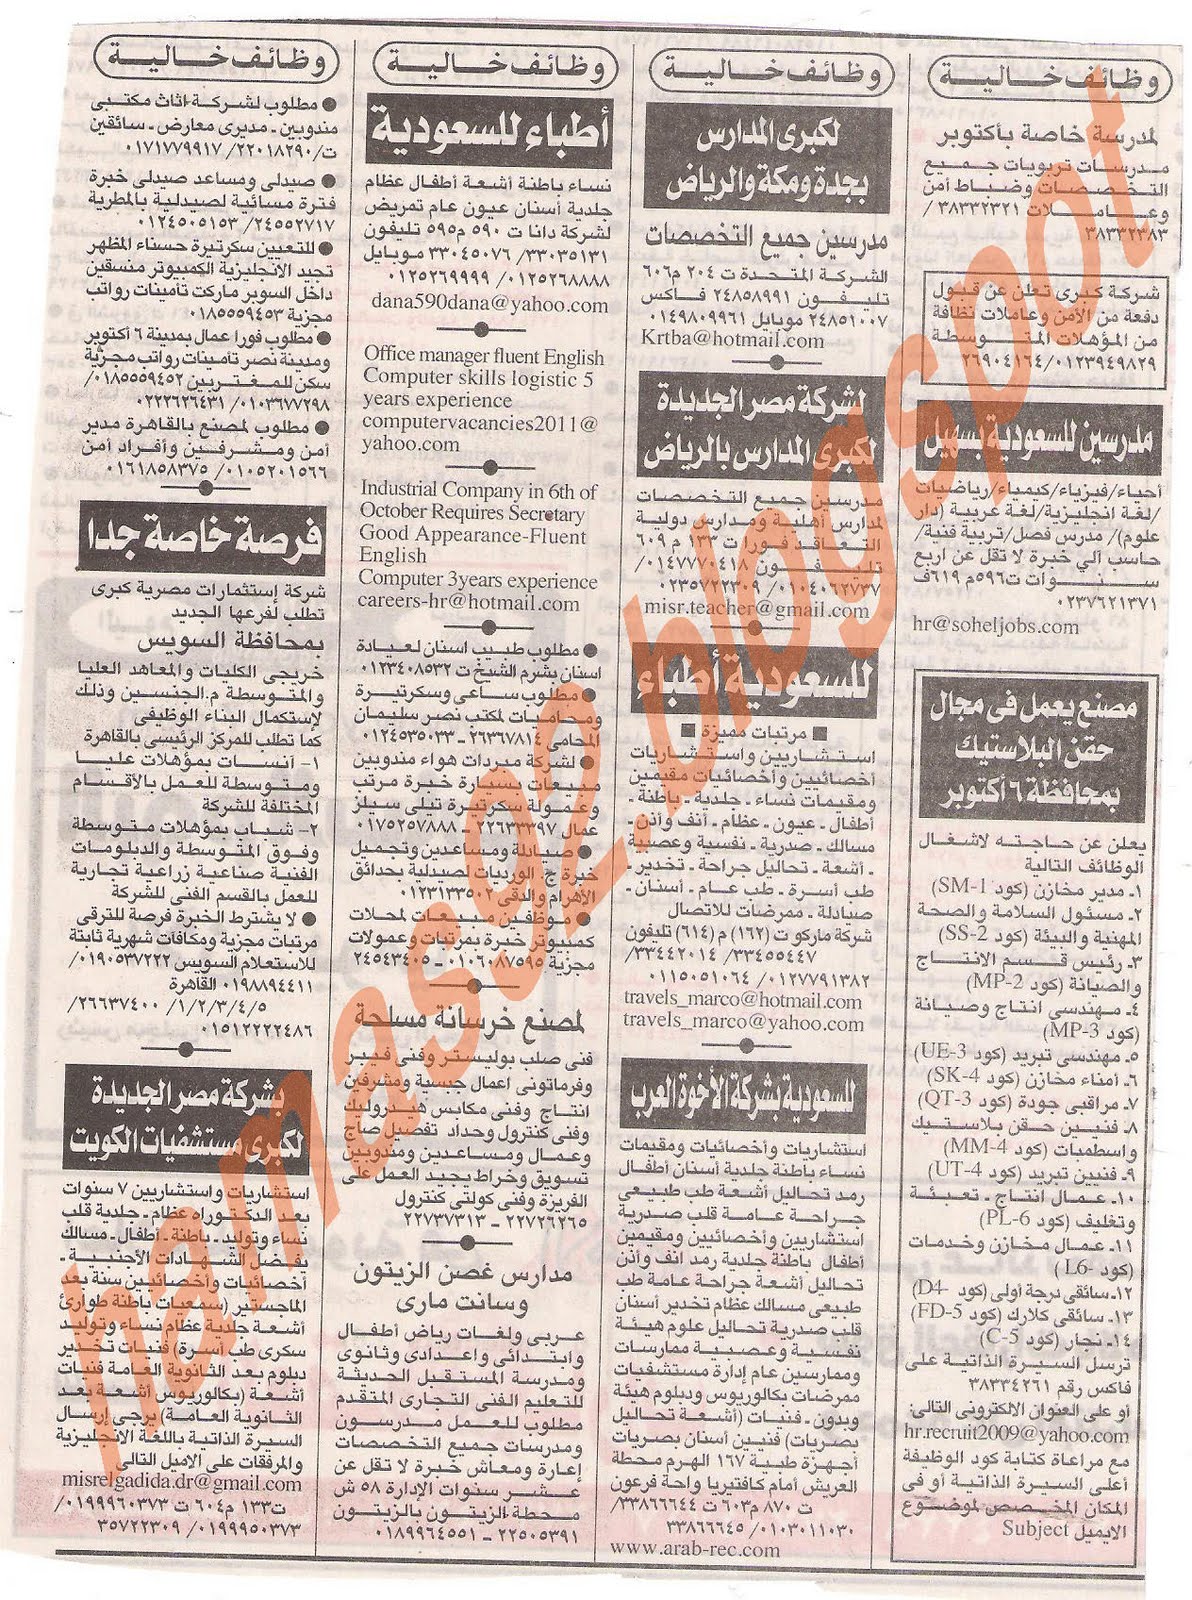 وظائف جريدة الاهرام الجمعة 1 يوليو 2011 - الجزء الثانى Picture+006